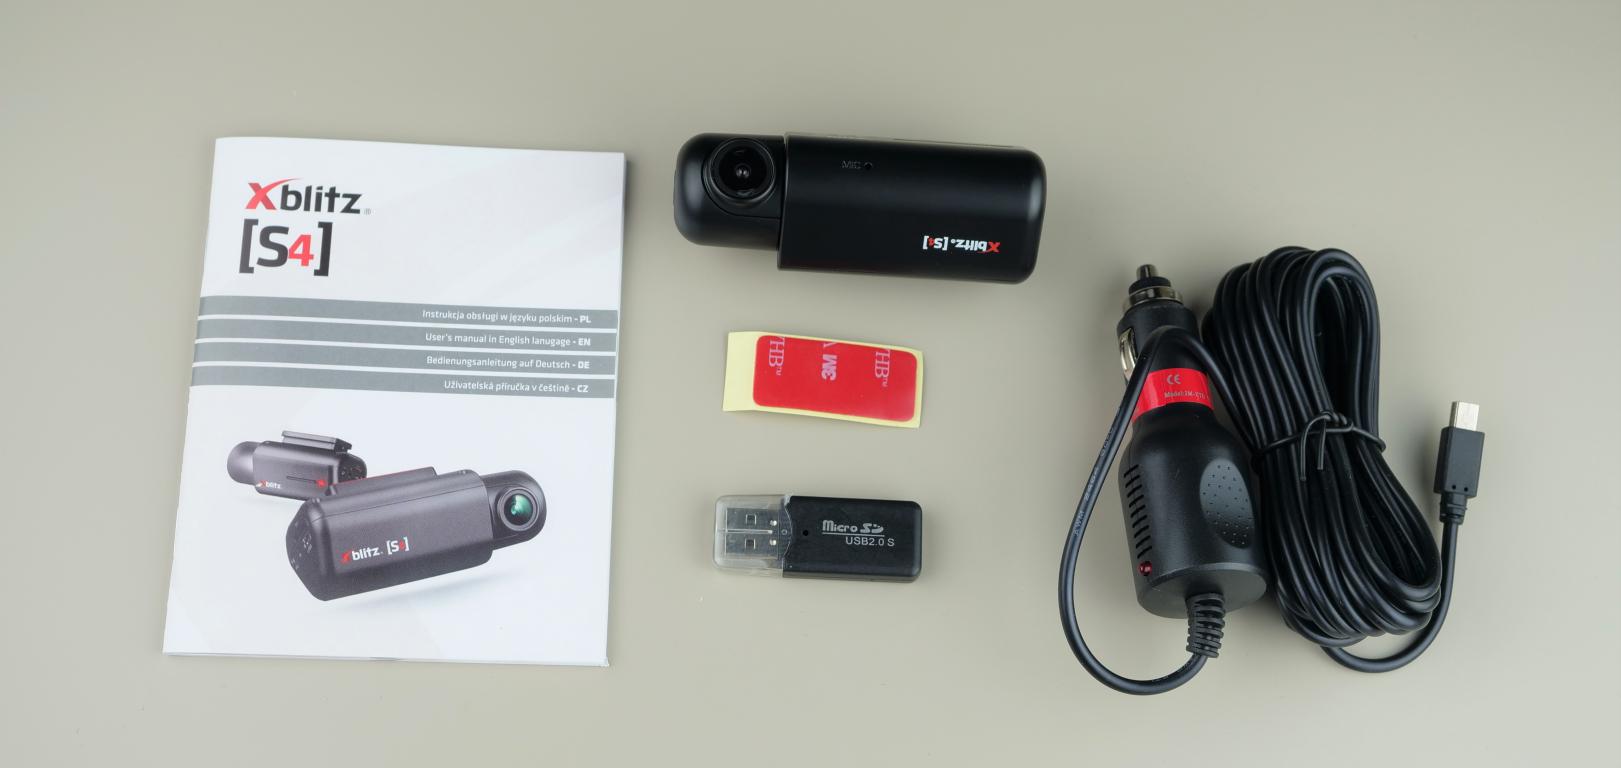 Xblitz S4 - recenzja mini kamery samochodowej - zawartość pudełka